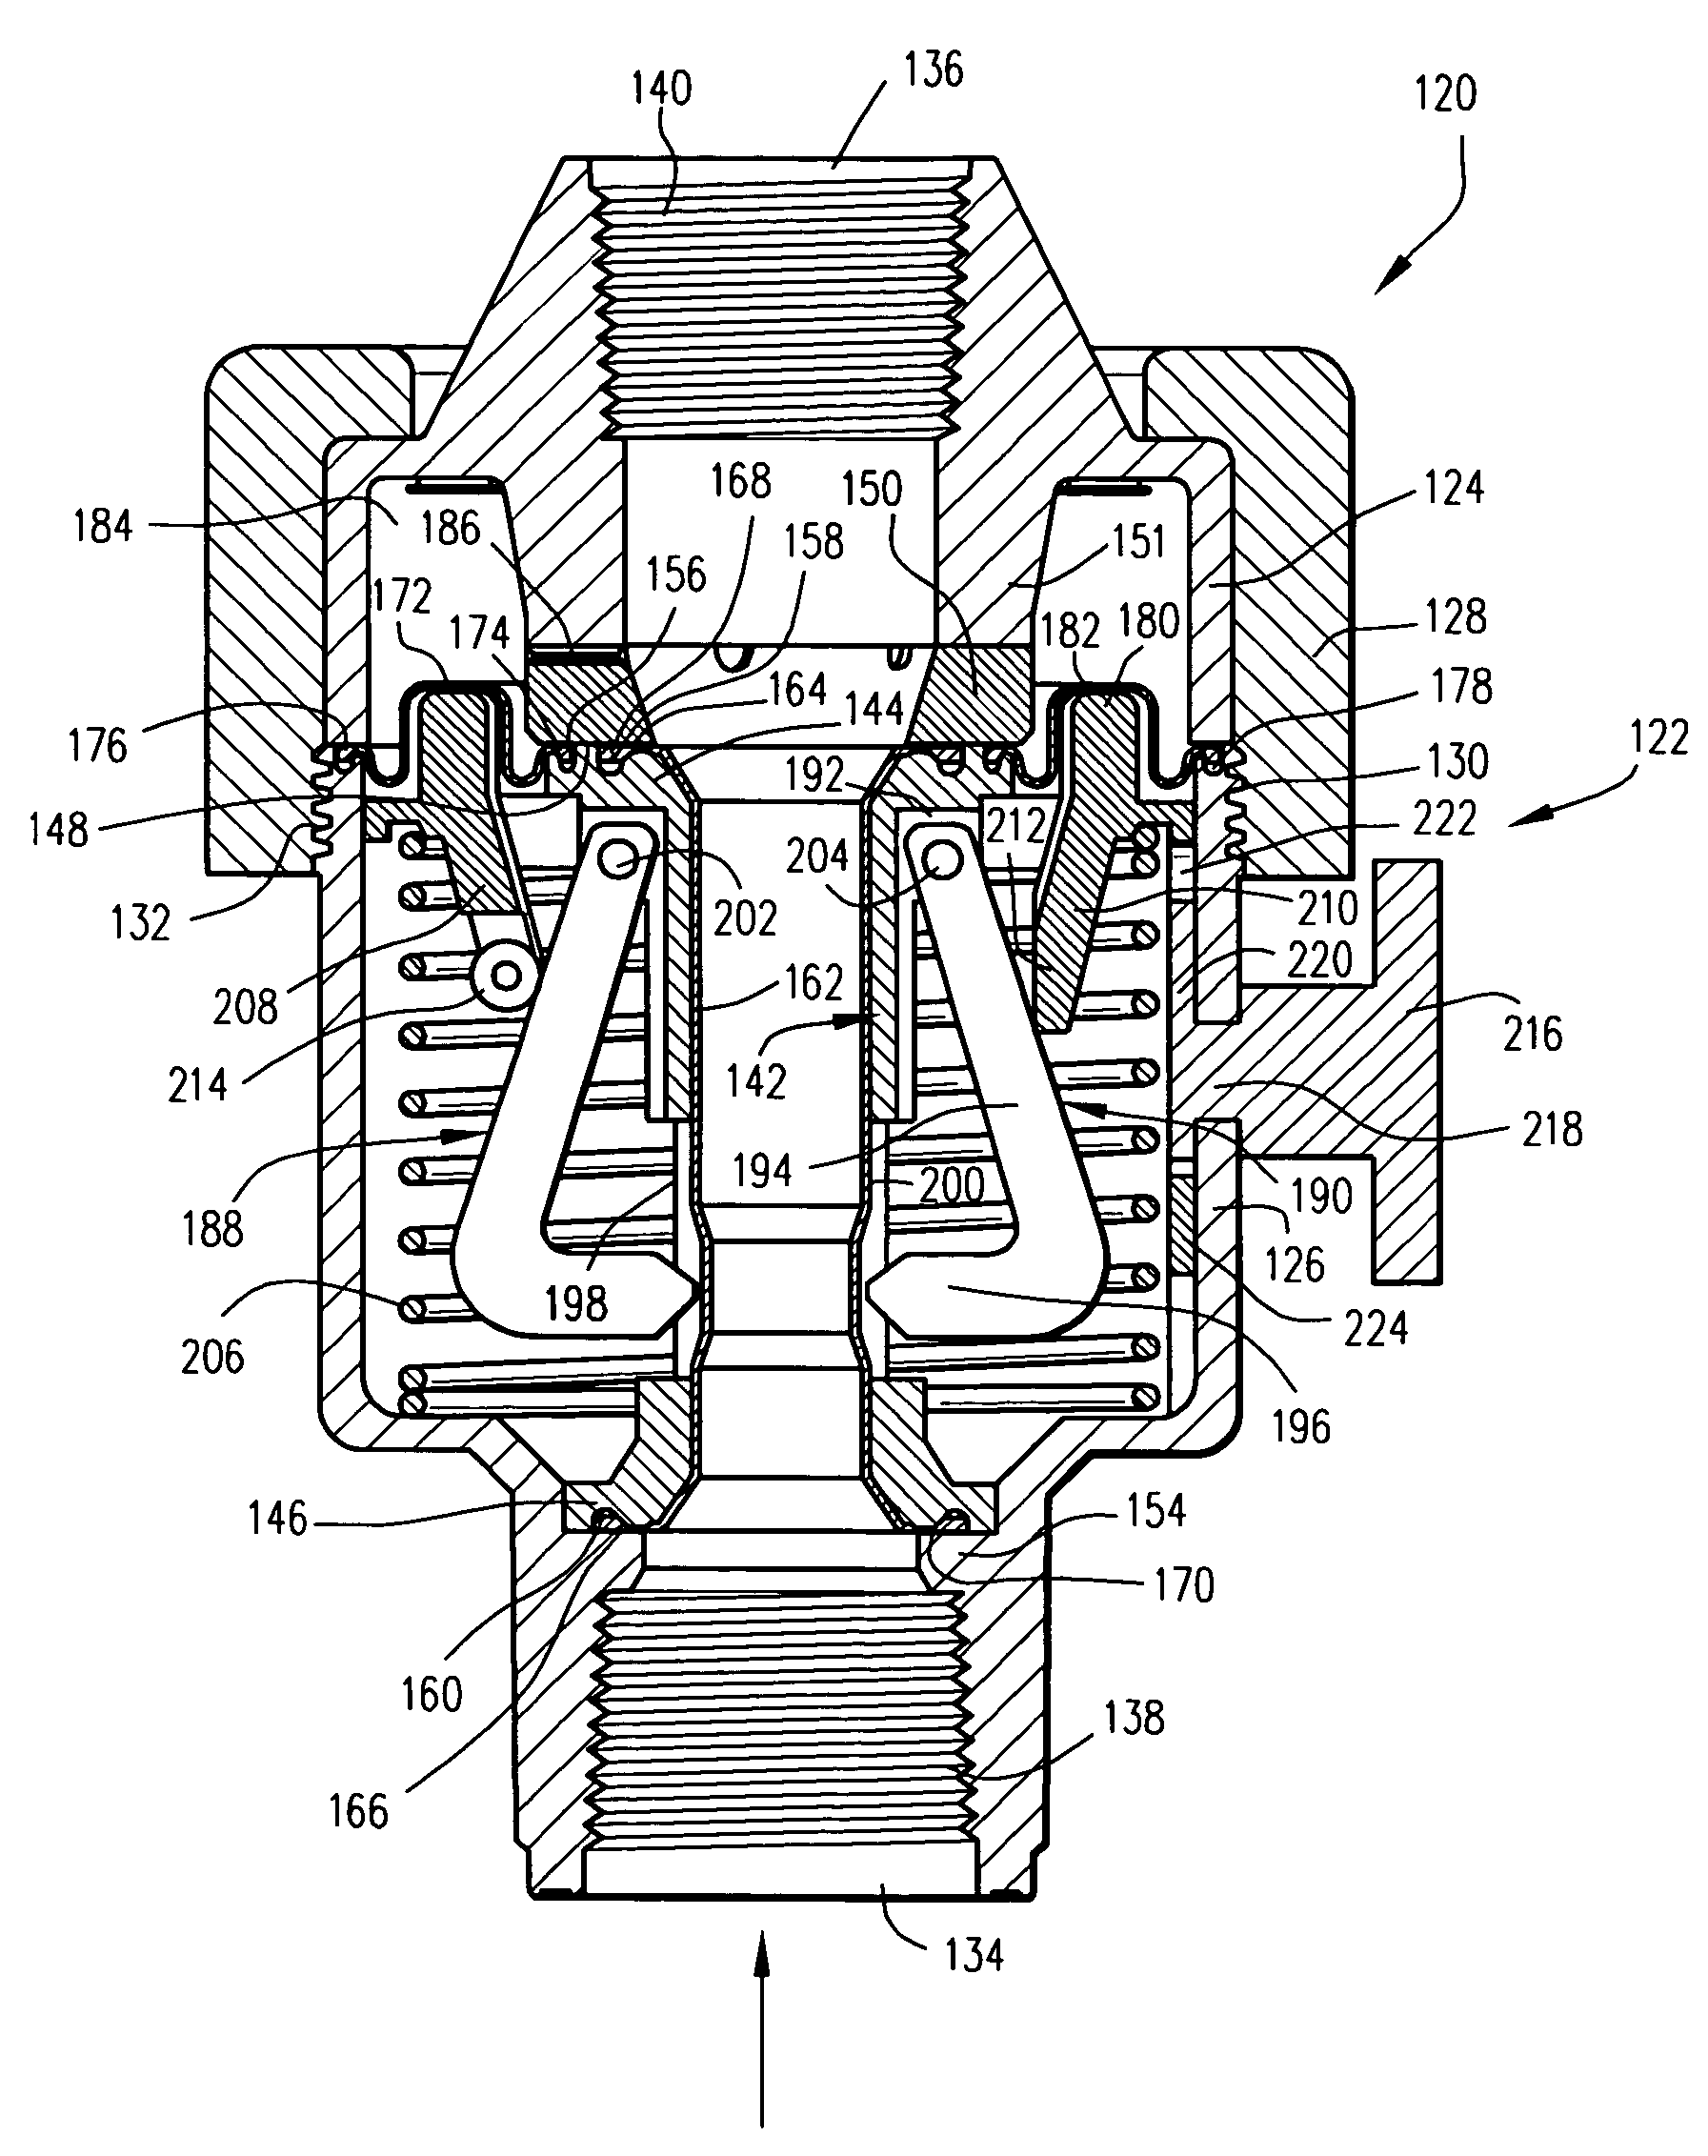 Flow through pressure regulator with pinch valve